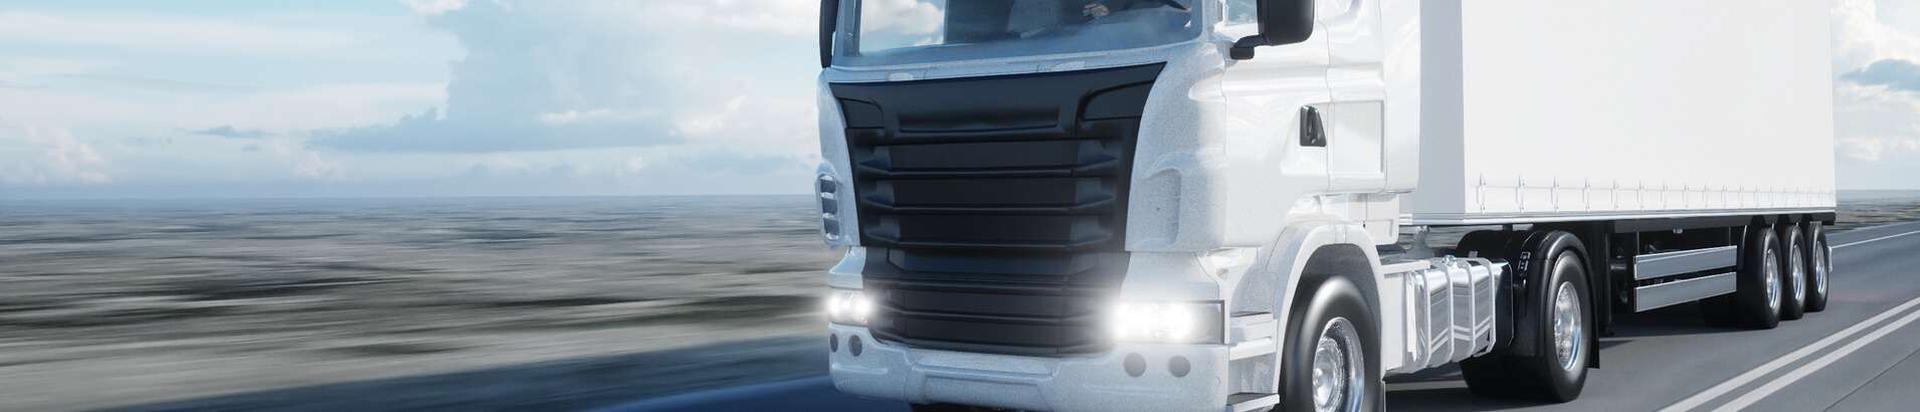 Merxton Veod OÜ alustas tegevust 2008. aastal, peamiseks tegevusvaldkonnaks on kaubavedu maanteel.